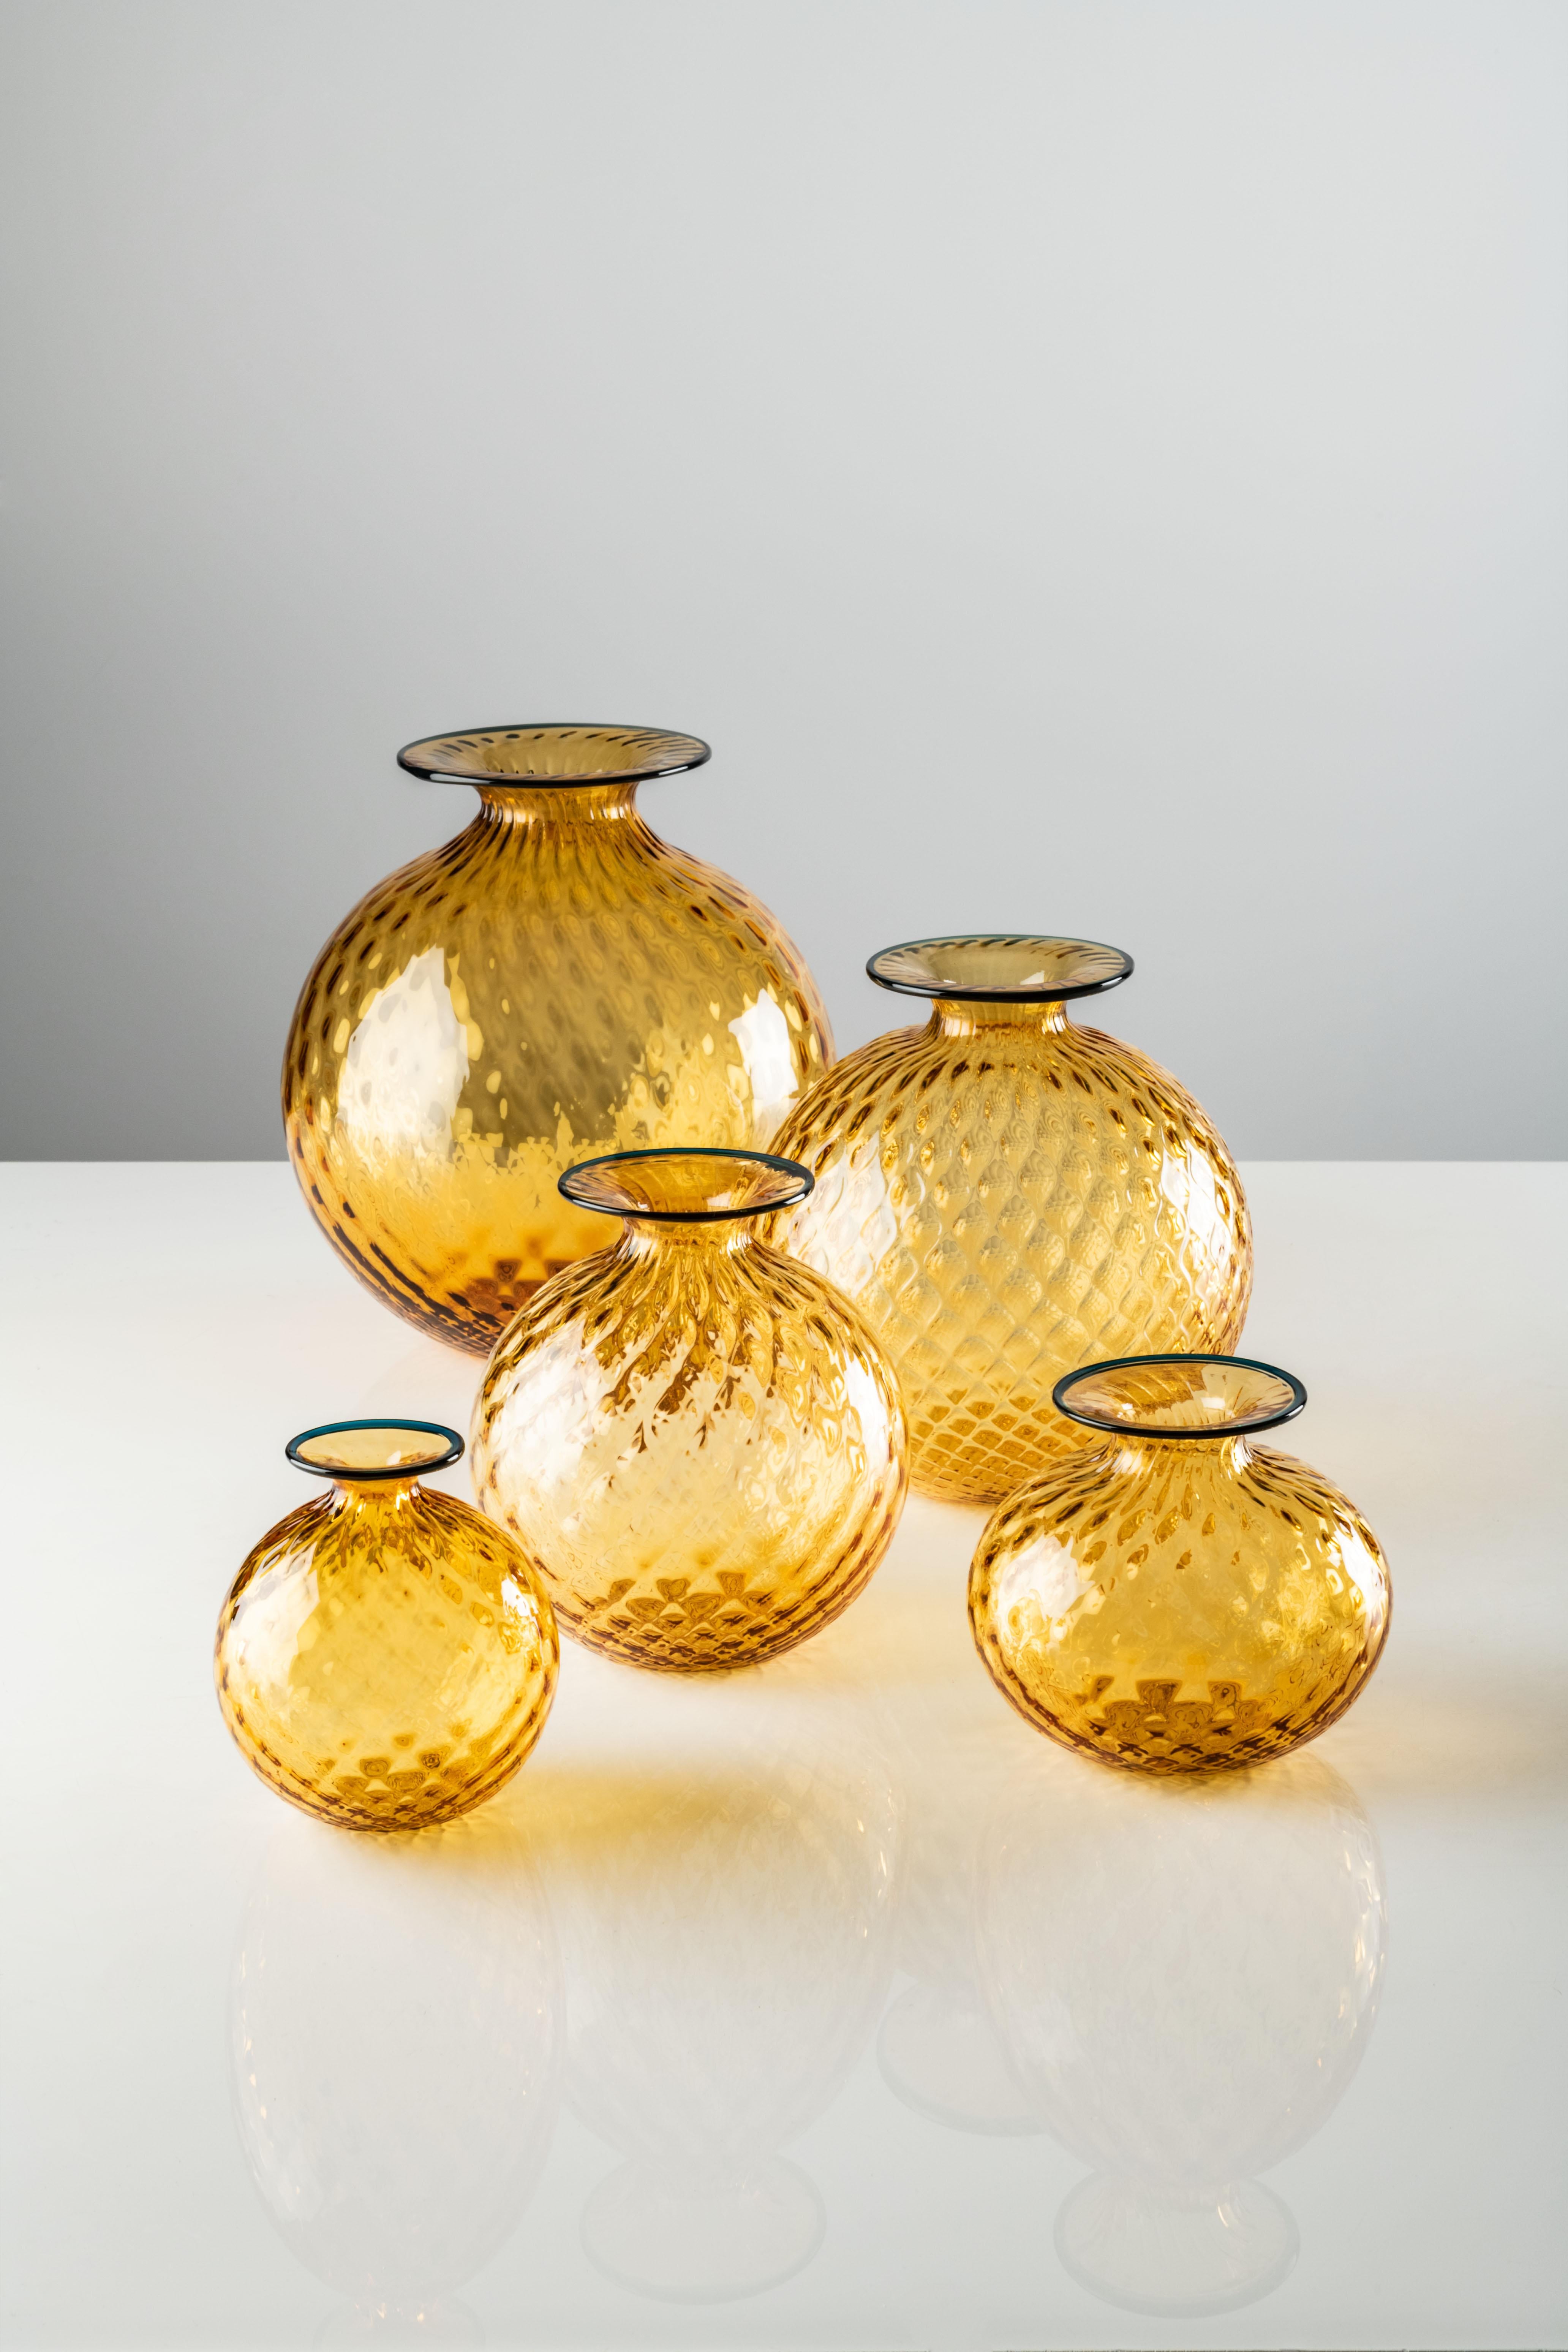 Monofiore Balloton Grand Vase en verre de Murano ambre par Venini. Il a l'air doux, mais ce n'est pas le cas ; c'est du verre. L'illusion d'optique de Monofiori de Venini de 1970 réside dans son nom : Balloton, une technique spéciale qui confère à